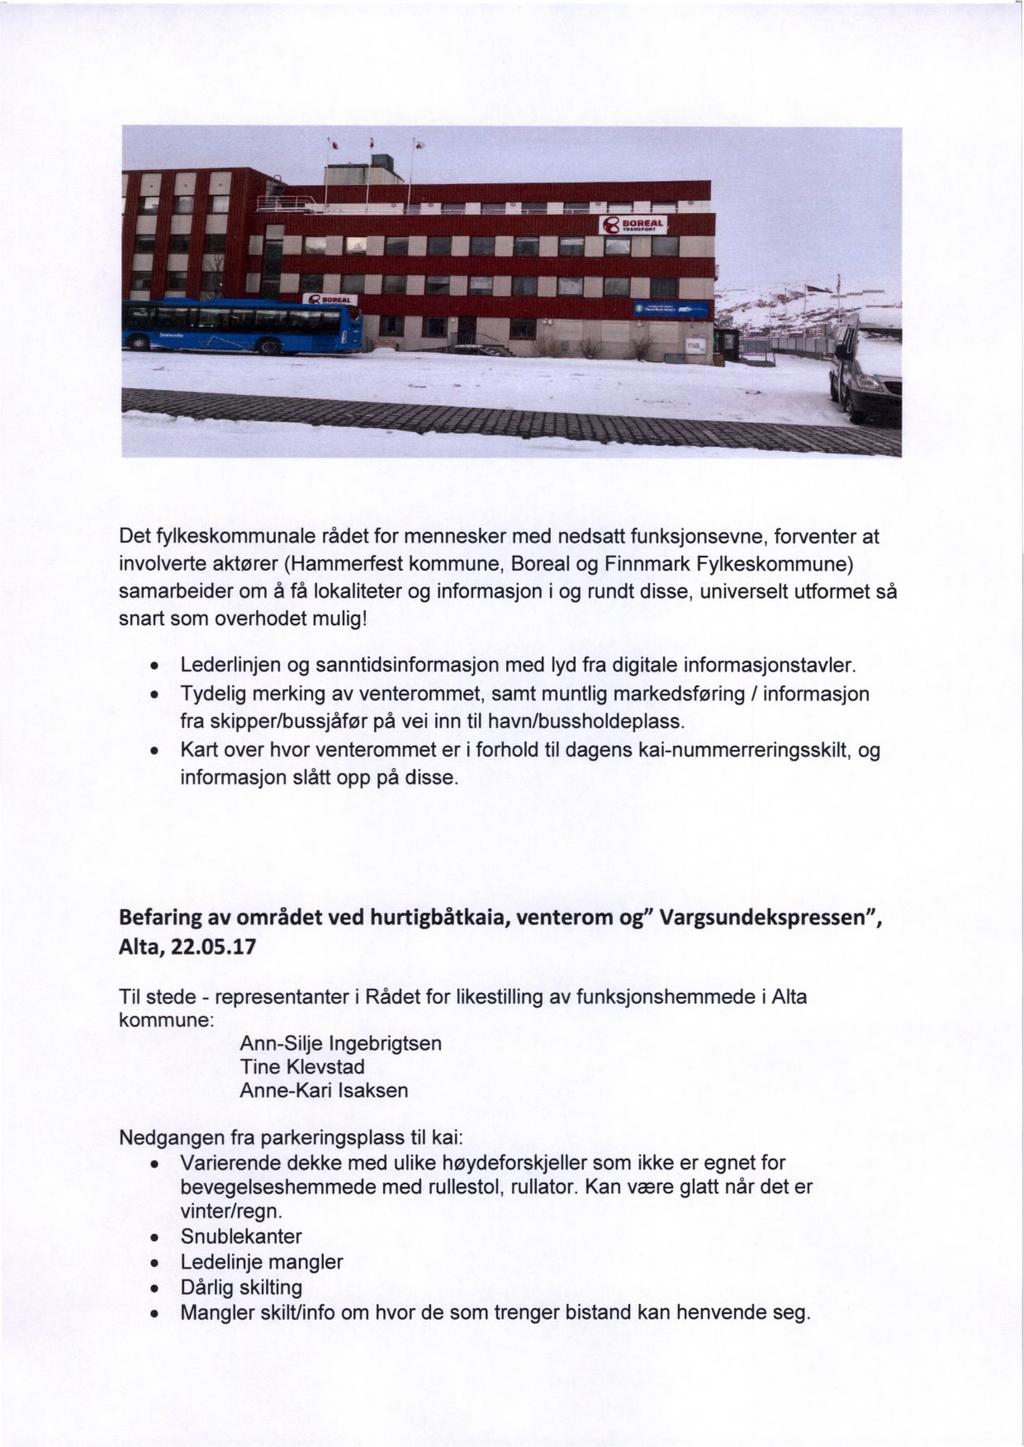 ORIFAL Det fylkeskommunale rådet for mennesker med nedsatt funksjonsevne, forventer at involverte aktører (Hammerfest kommune, Boreal og Finnmark Fylkeskommune) samarbeider om å få lokaliteter og